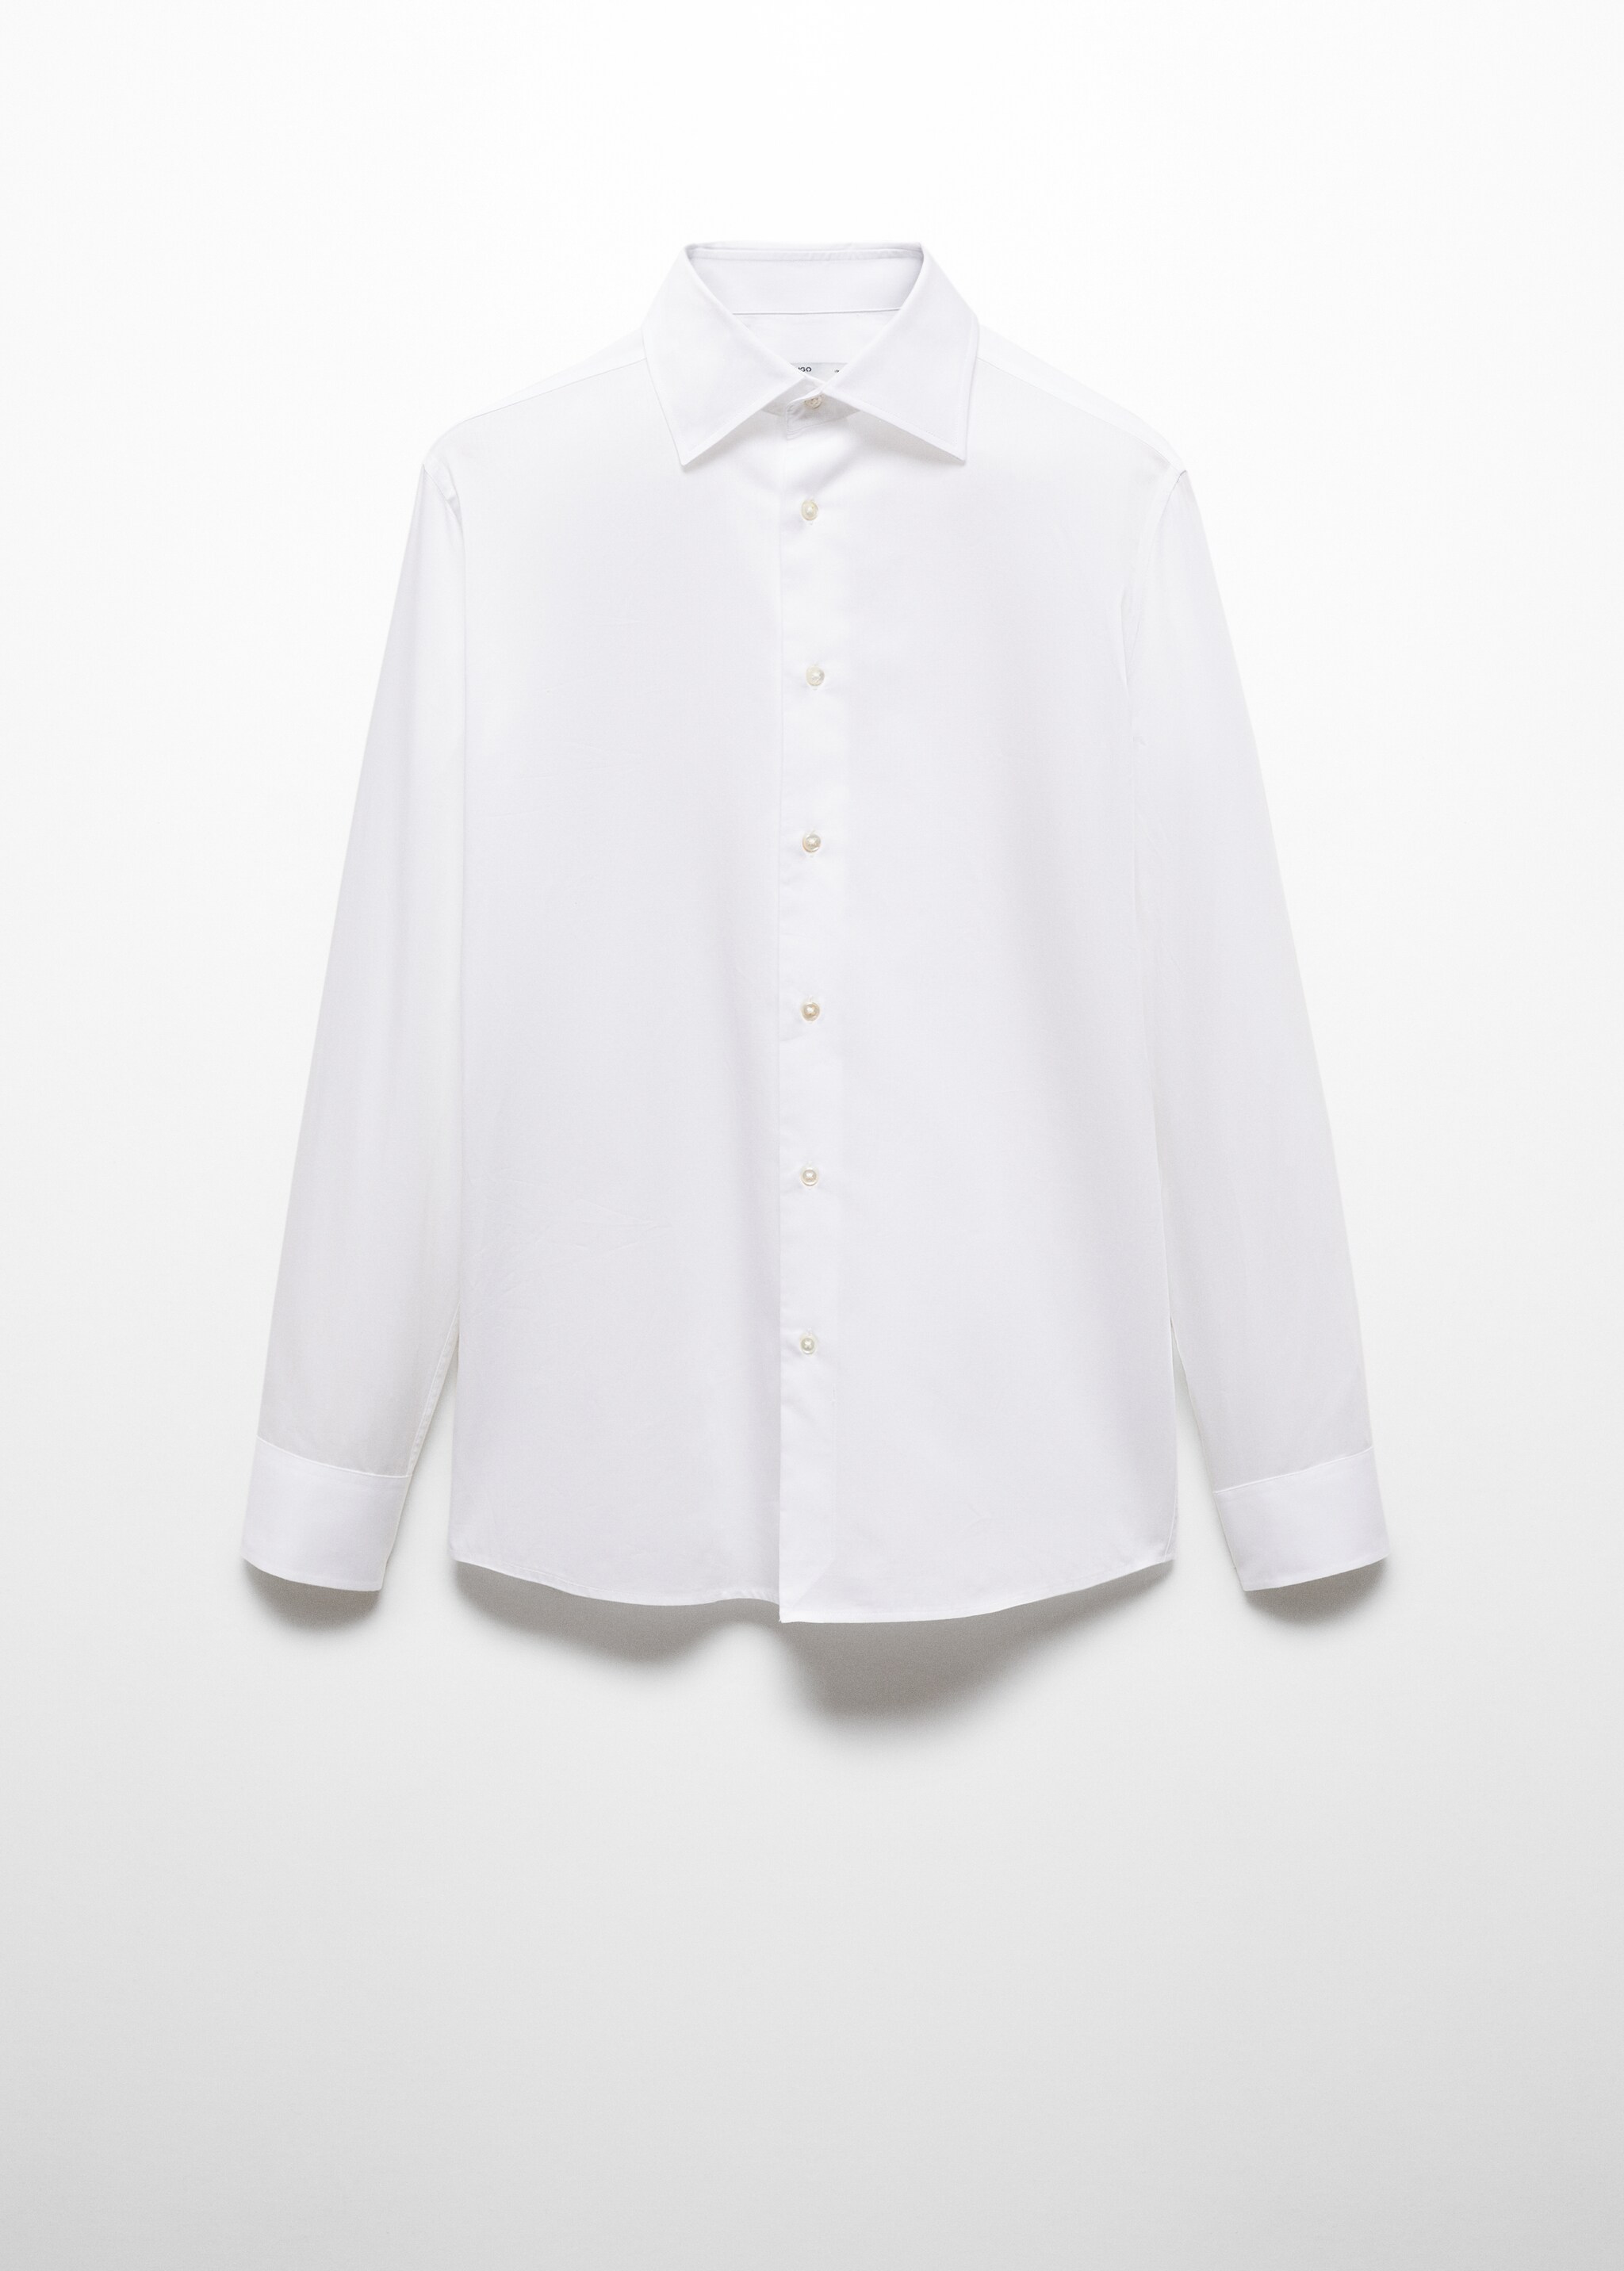 Camisa slim fit de twill de 100% algodão - Artigo sem modelo